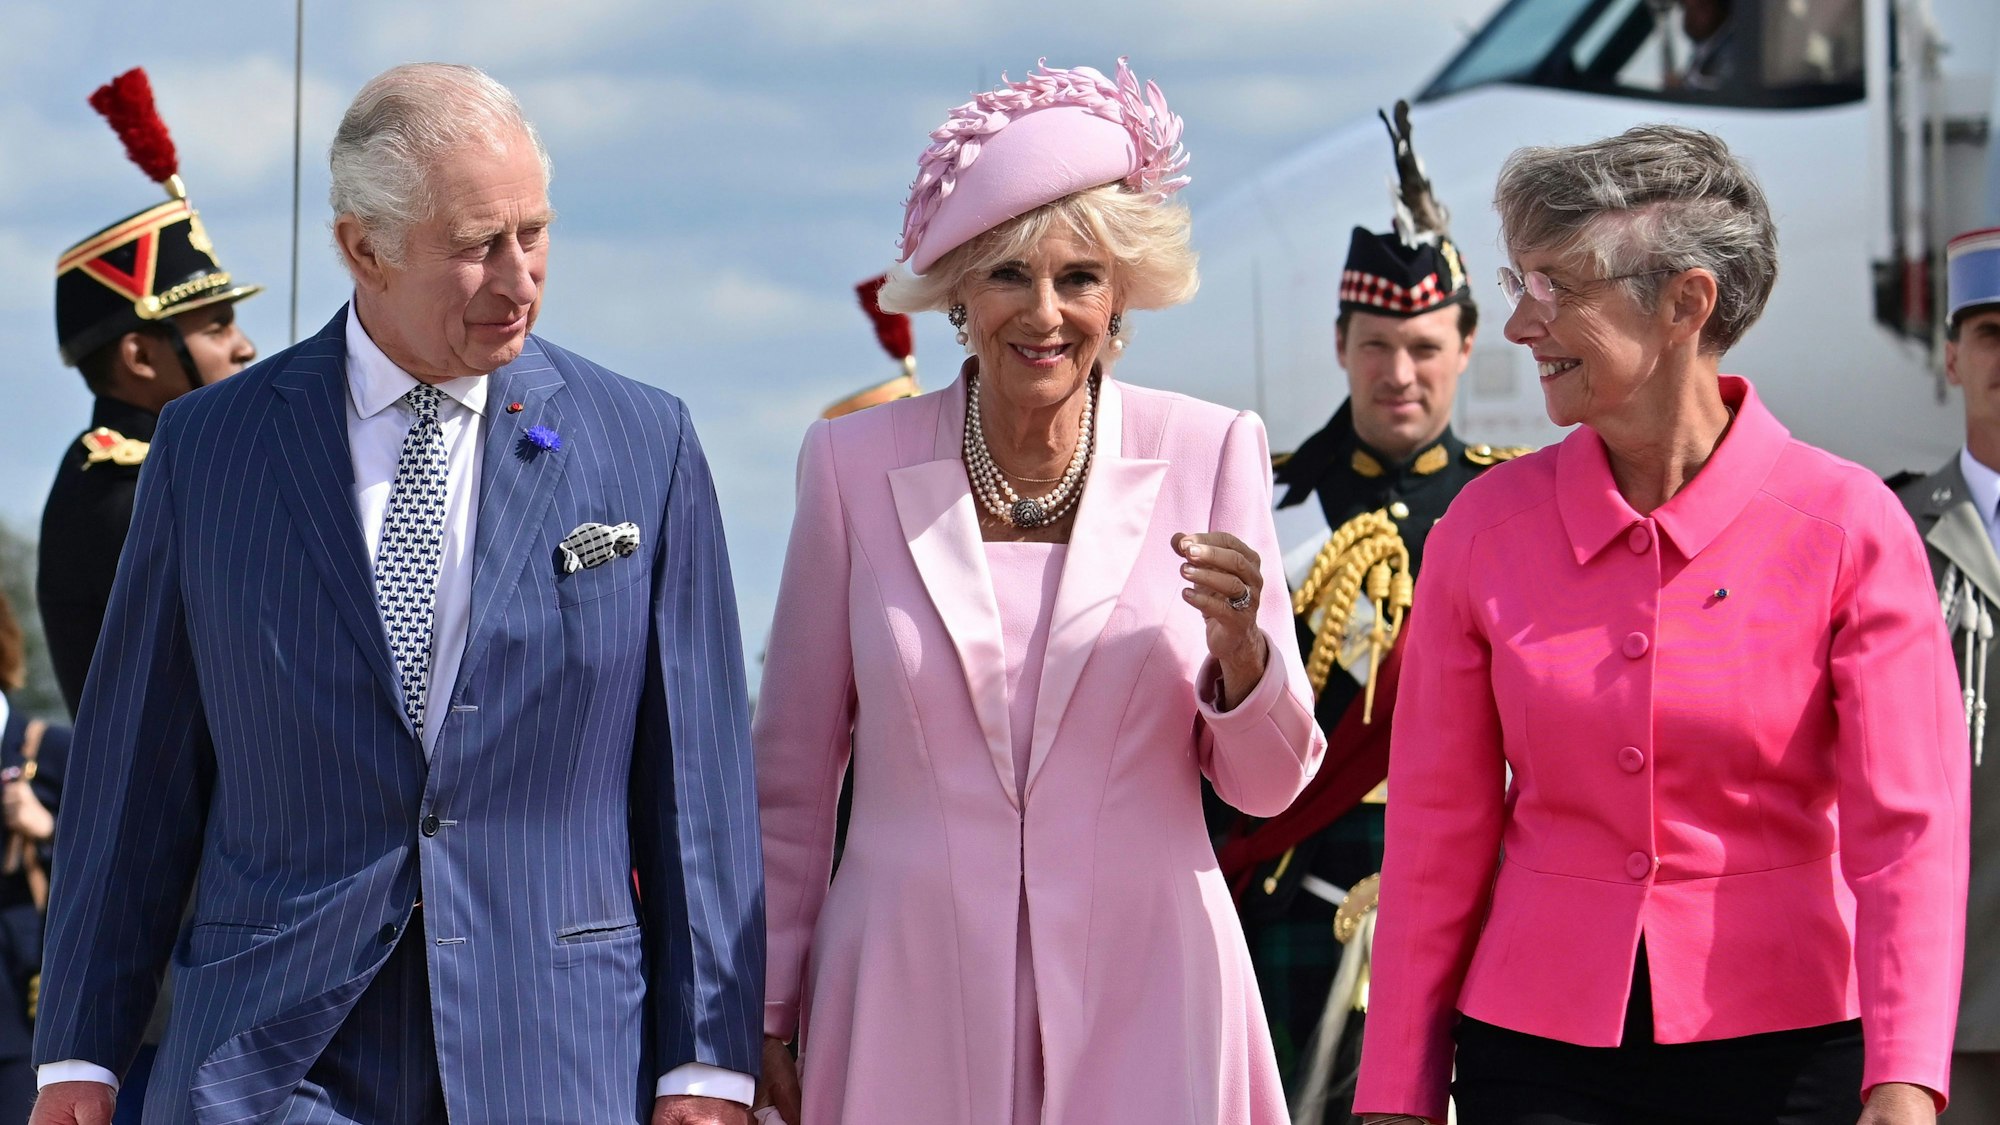 König Charles III. und seine Gemahlin Camilla treffen Frankreichs Staatschef Emmanuel Macron. Im Bild werden sie von der französischen Premierministerin Elisabeth Borne begrüßt.